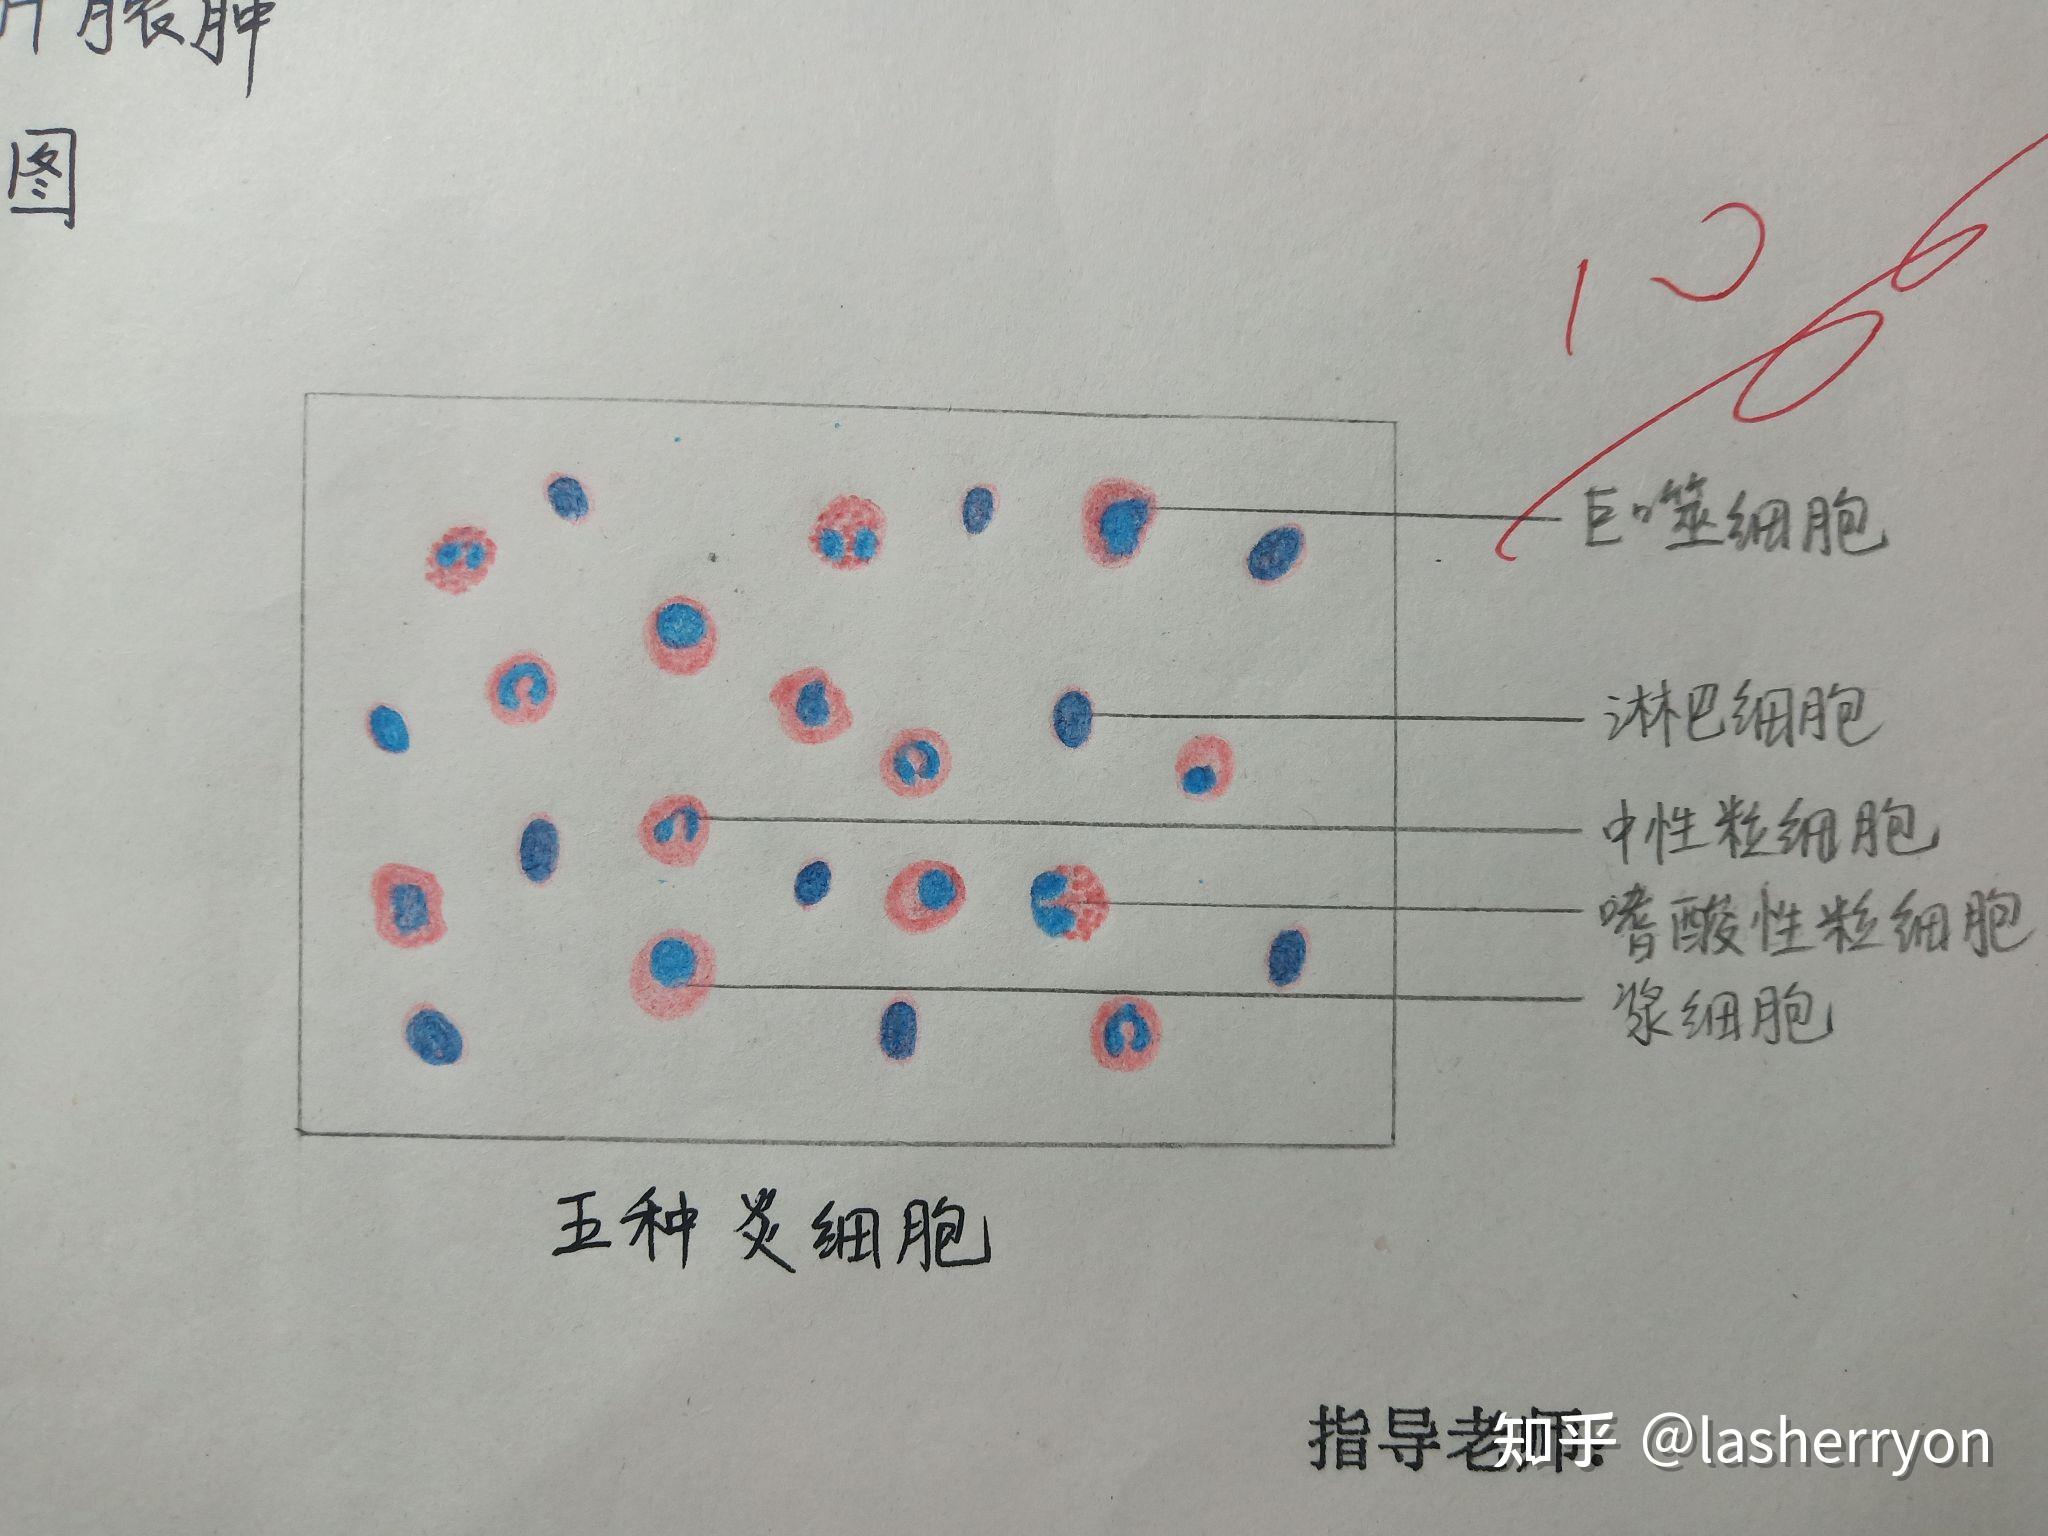 浆细胞的红蓝铅笔图图片